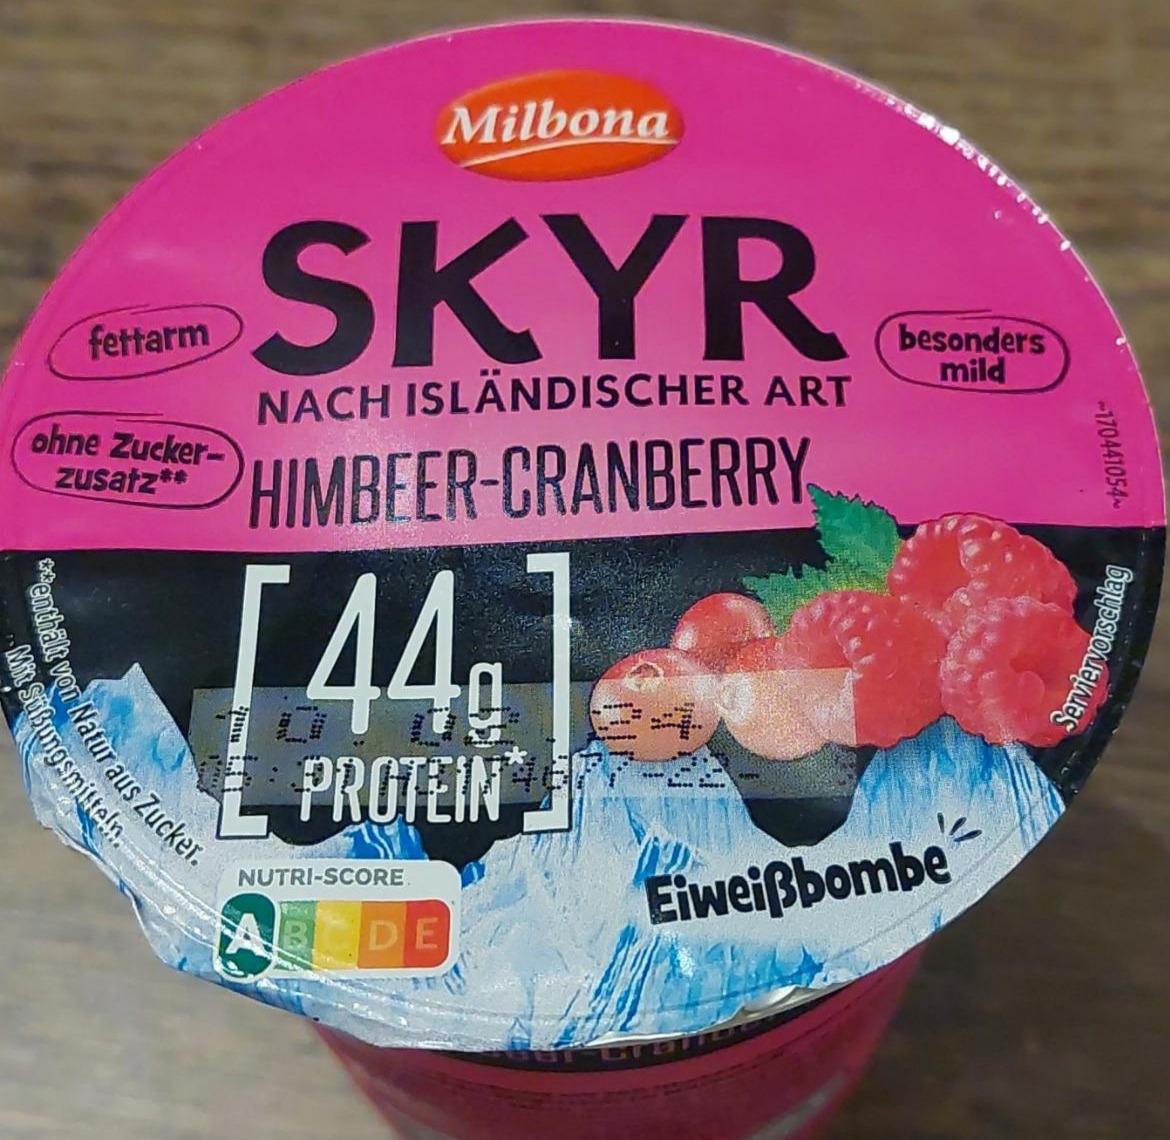 Фото - Йогурт с малиной Skyr Himbeer-Cranberry Milbona